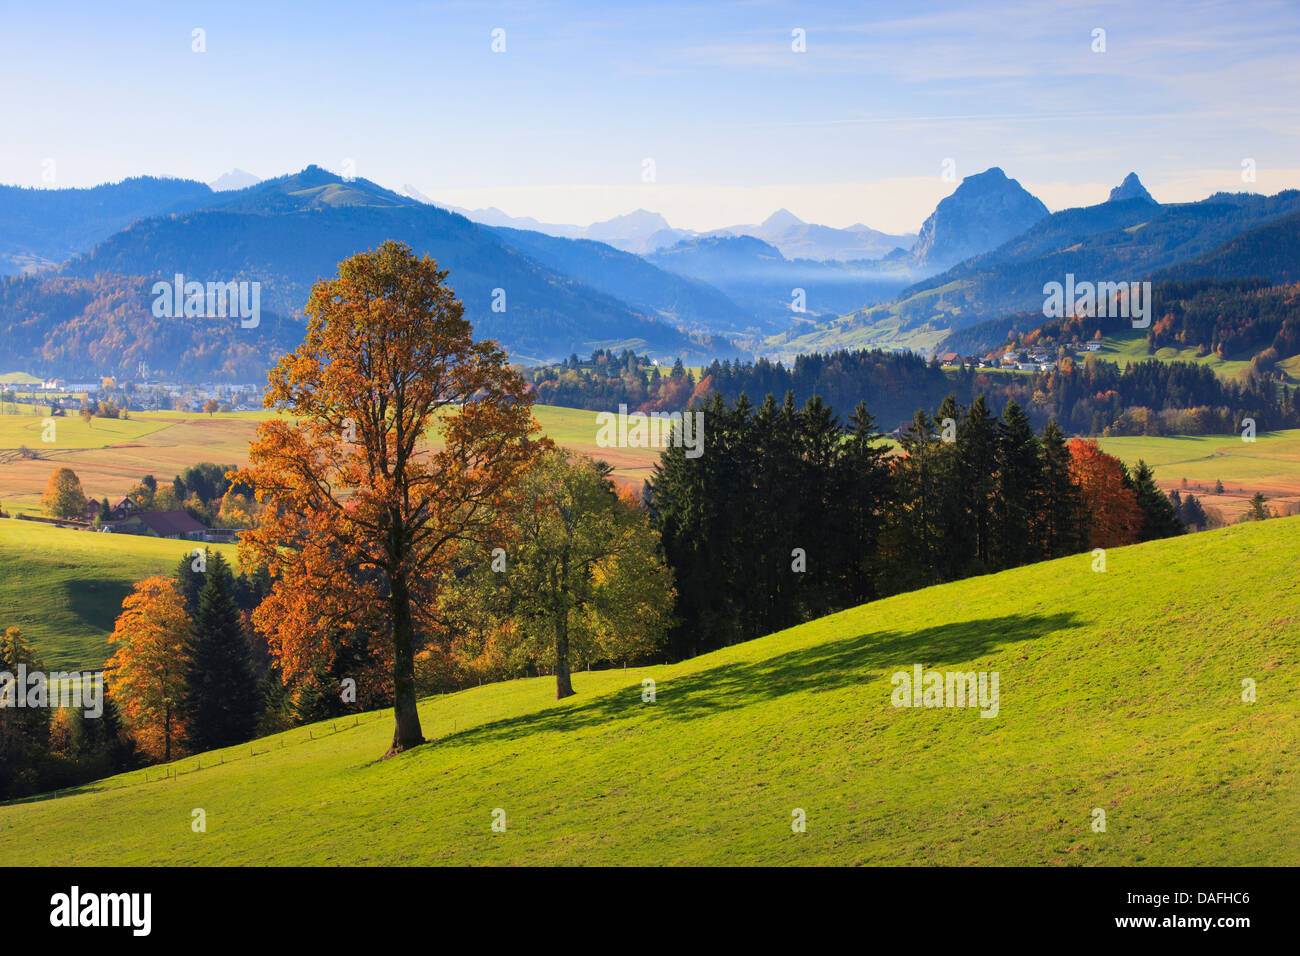 Alps of Central Switzerland with Mythen, Switzerland, Einsiedeln Stock Photo